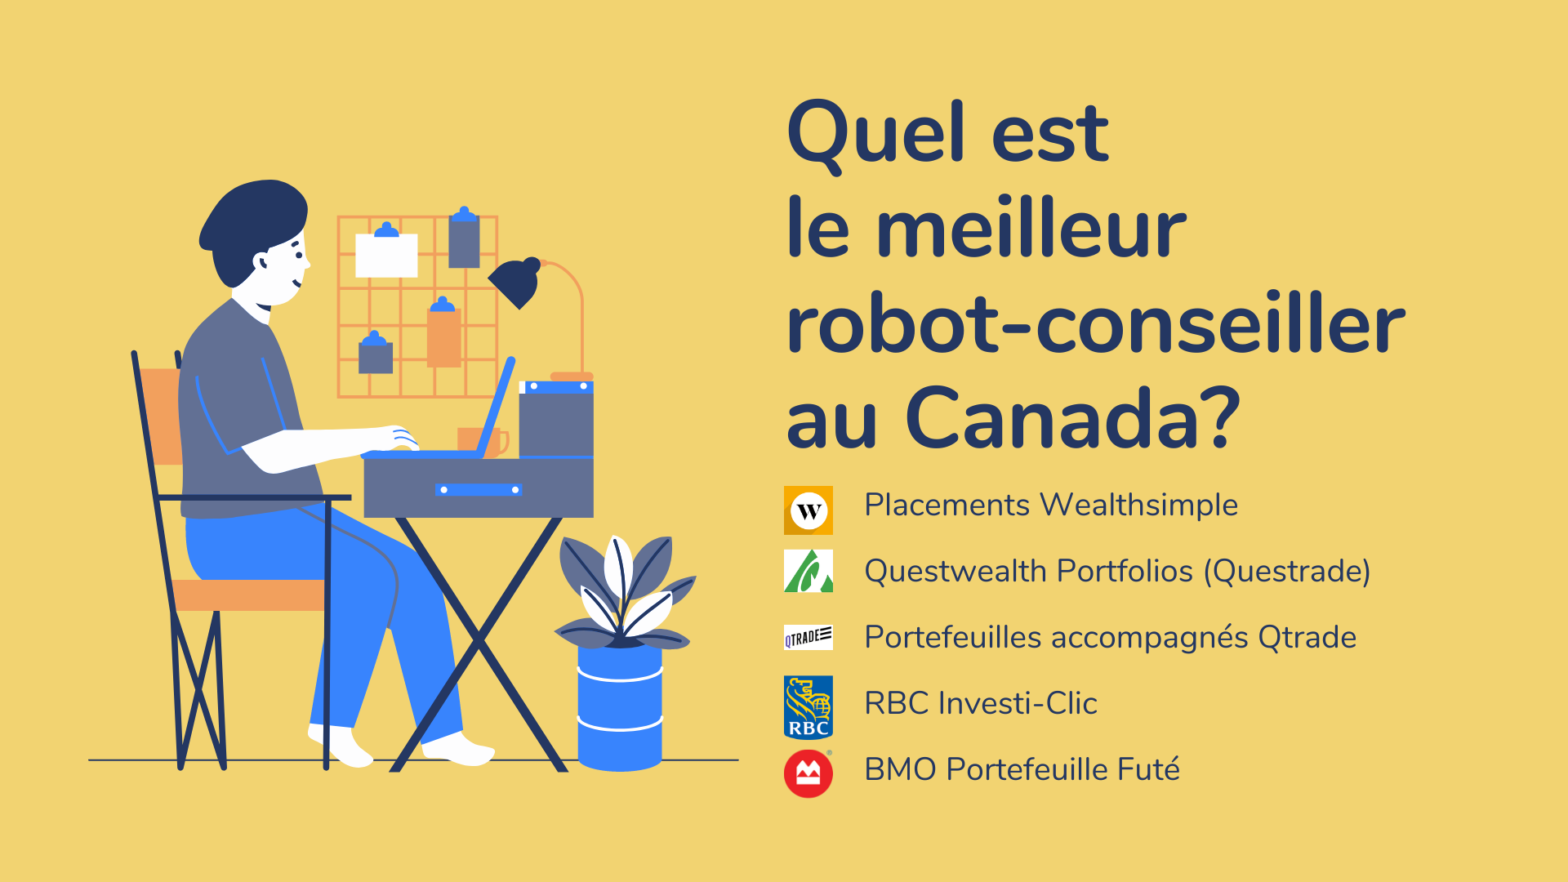 Quel est le meilleur robot-conseiller au Canada?